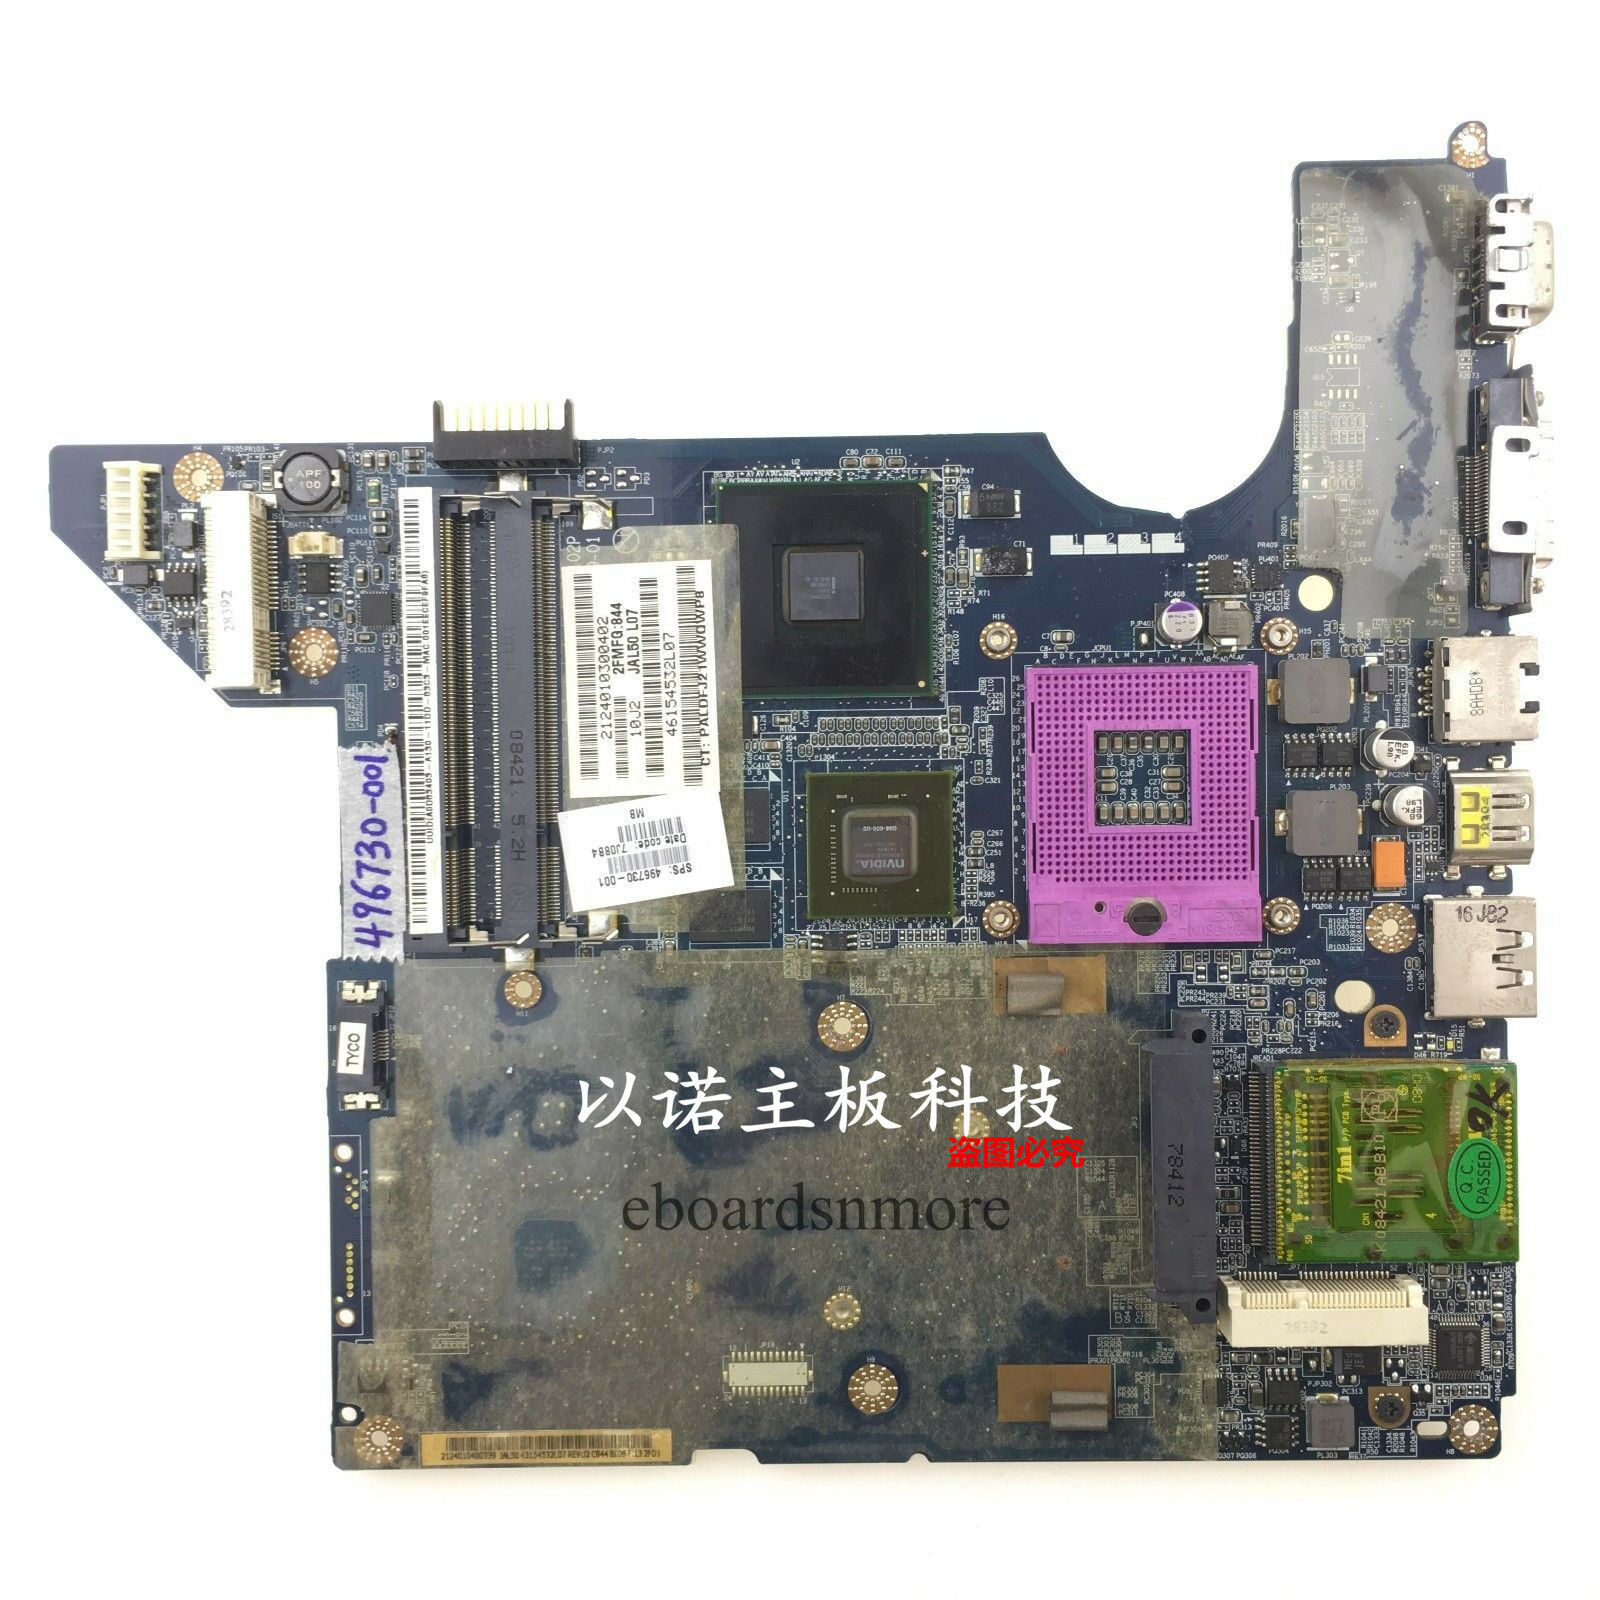 496730-001 for HP dv4 intel motherboard PM45 nvidia G98-600-U2,LA-4102P,Grade A Compatible CPU Brand: Intel